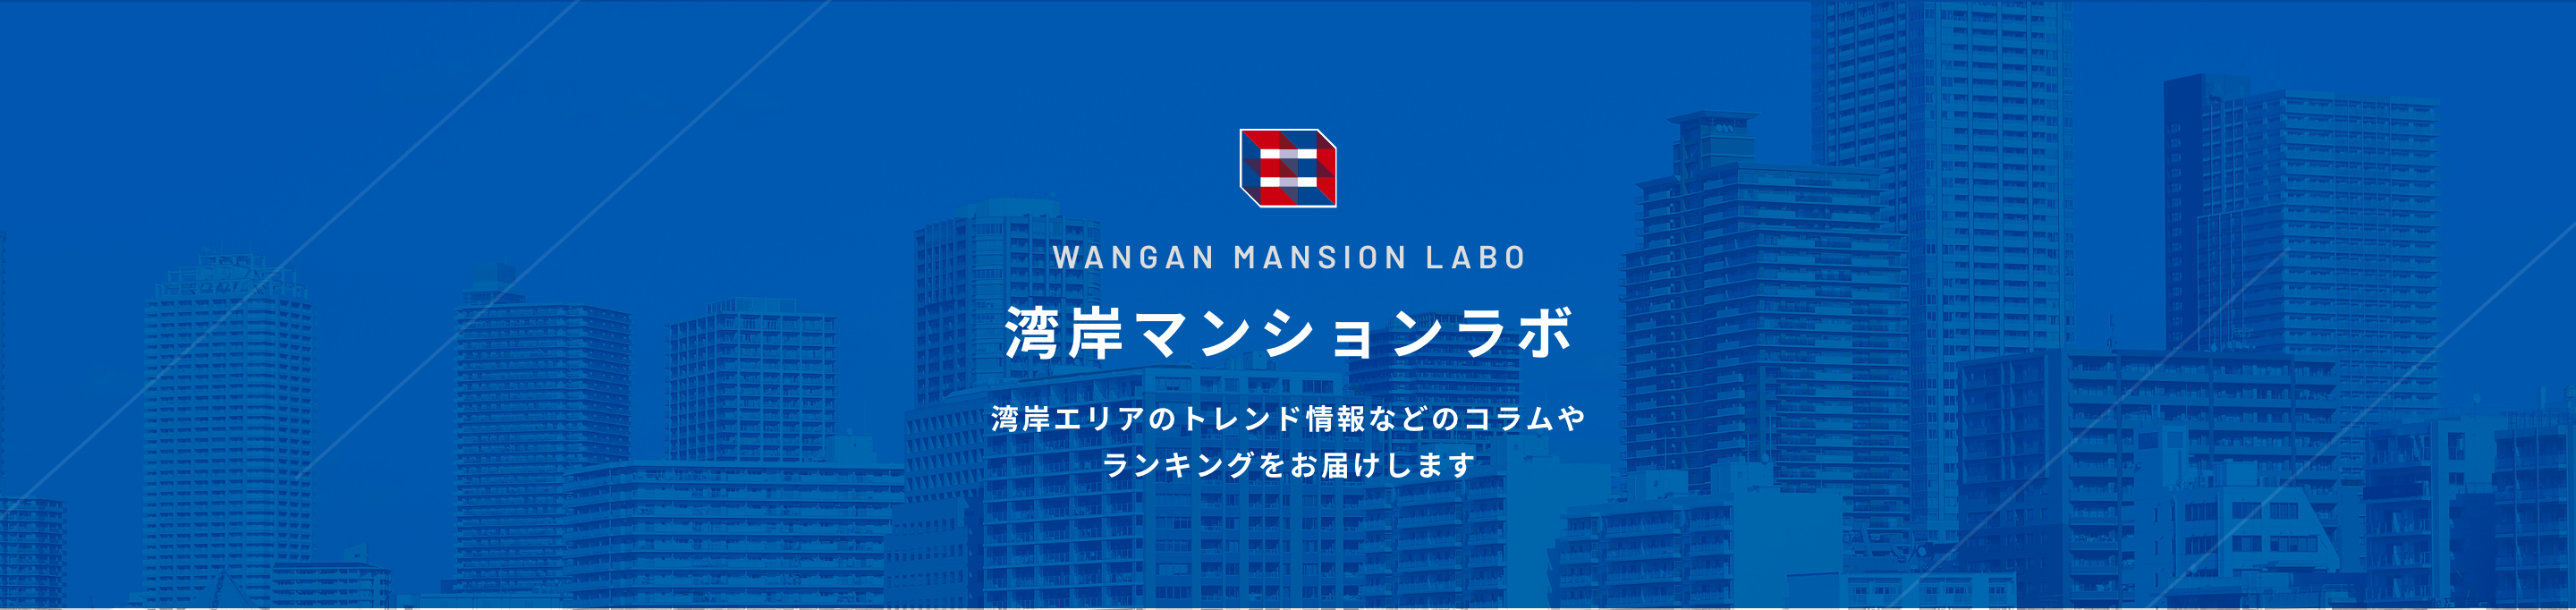 WANGAN MANSION LABO 湾岸マンションラボ 湾岸エリアのトレンド情報などのコラムやランキングをお届けします